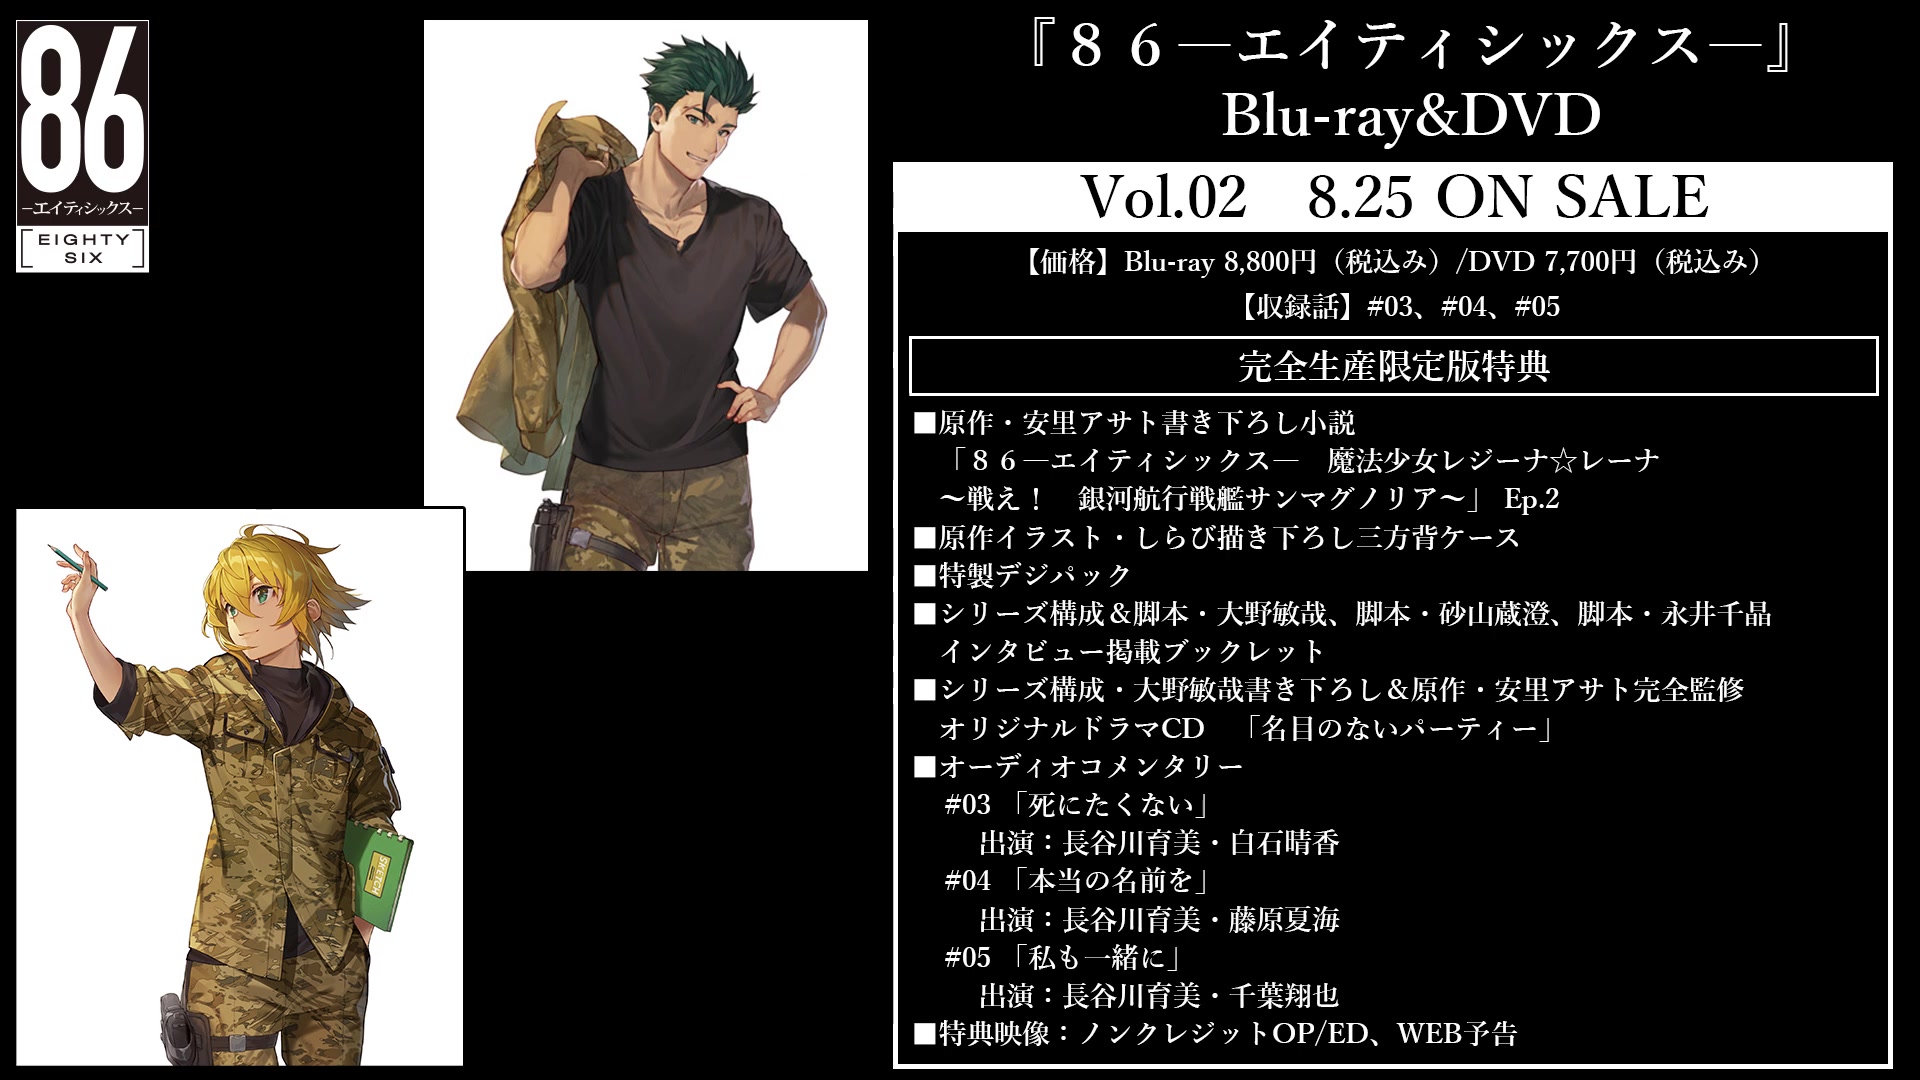 TVアニメ「８６―エイティシックス―」Blu-ray&DVD Vol.02 オリジナル 